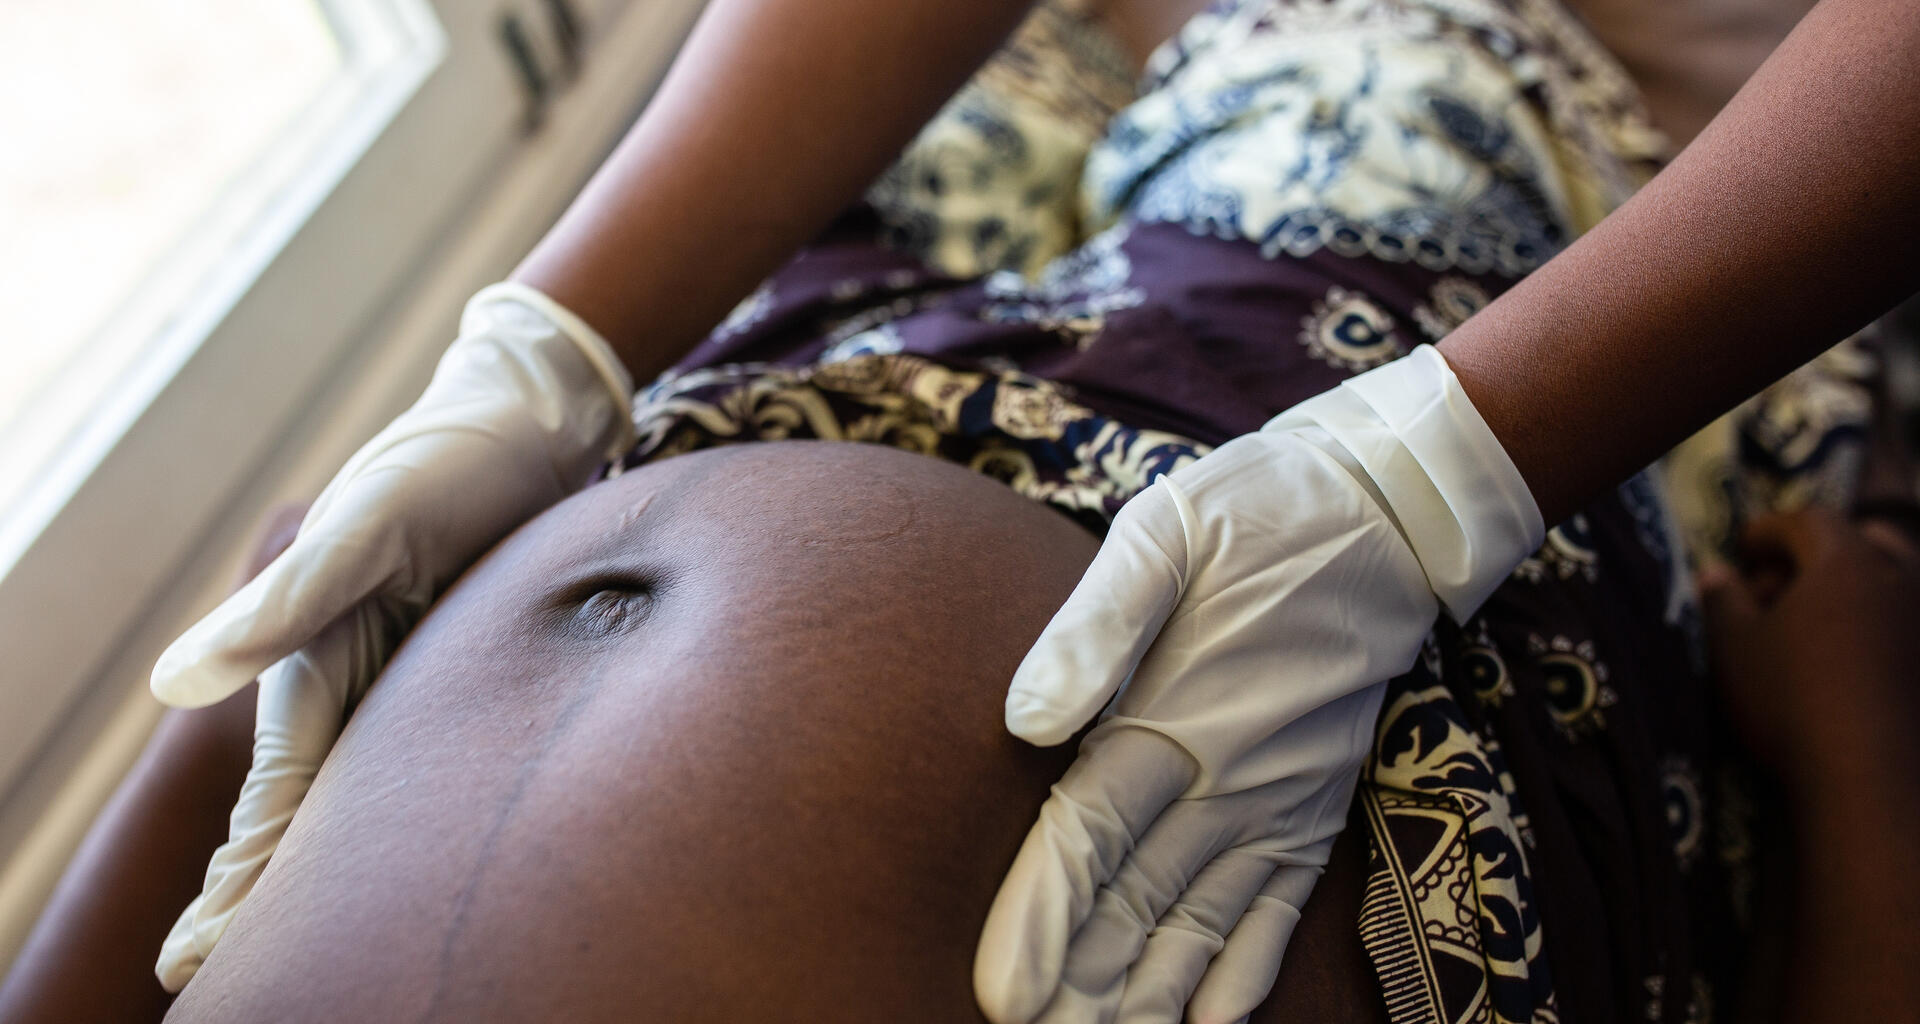 Un trabajador médico examina a una mujer embarazada.